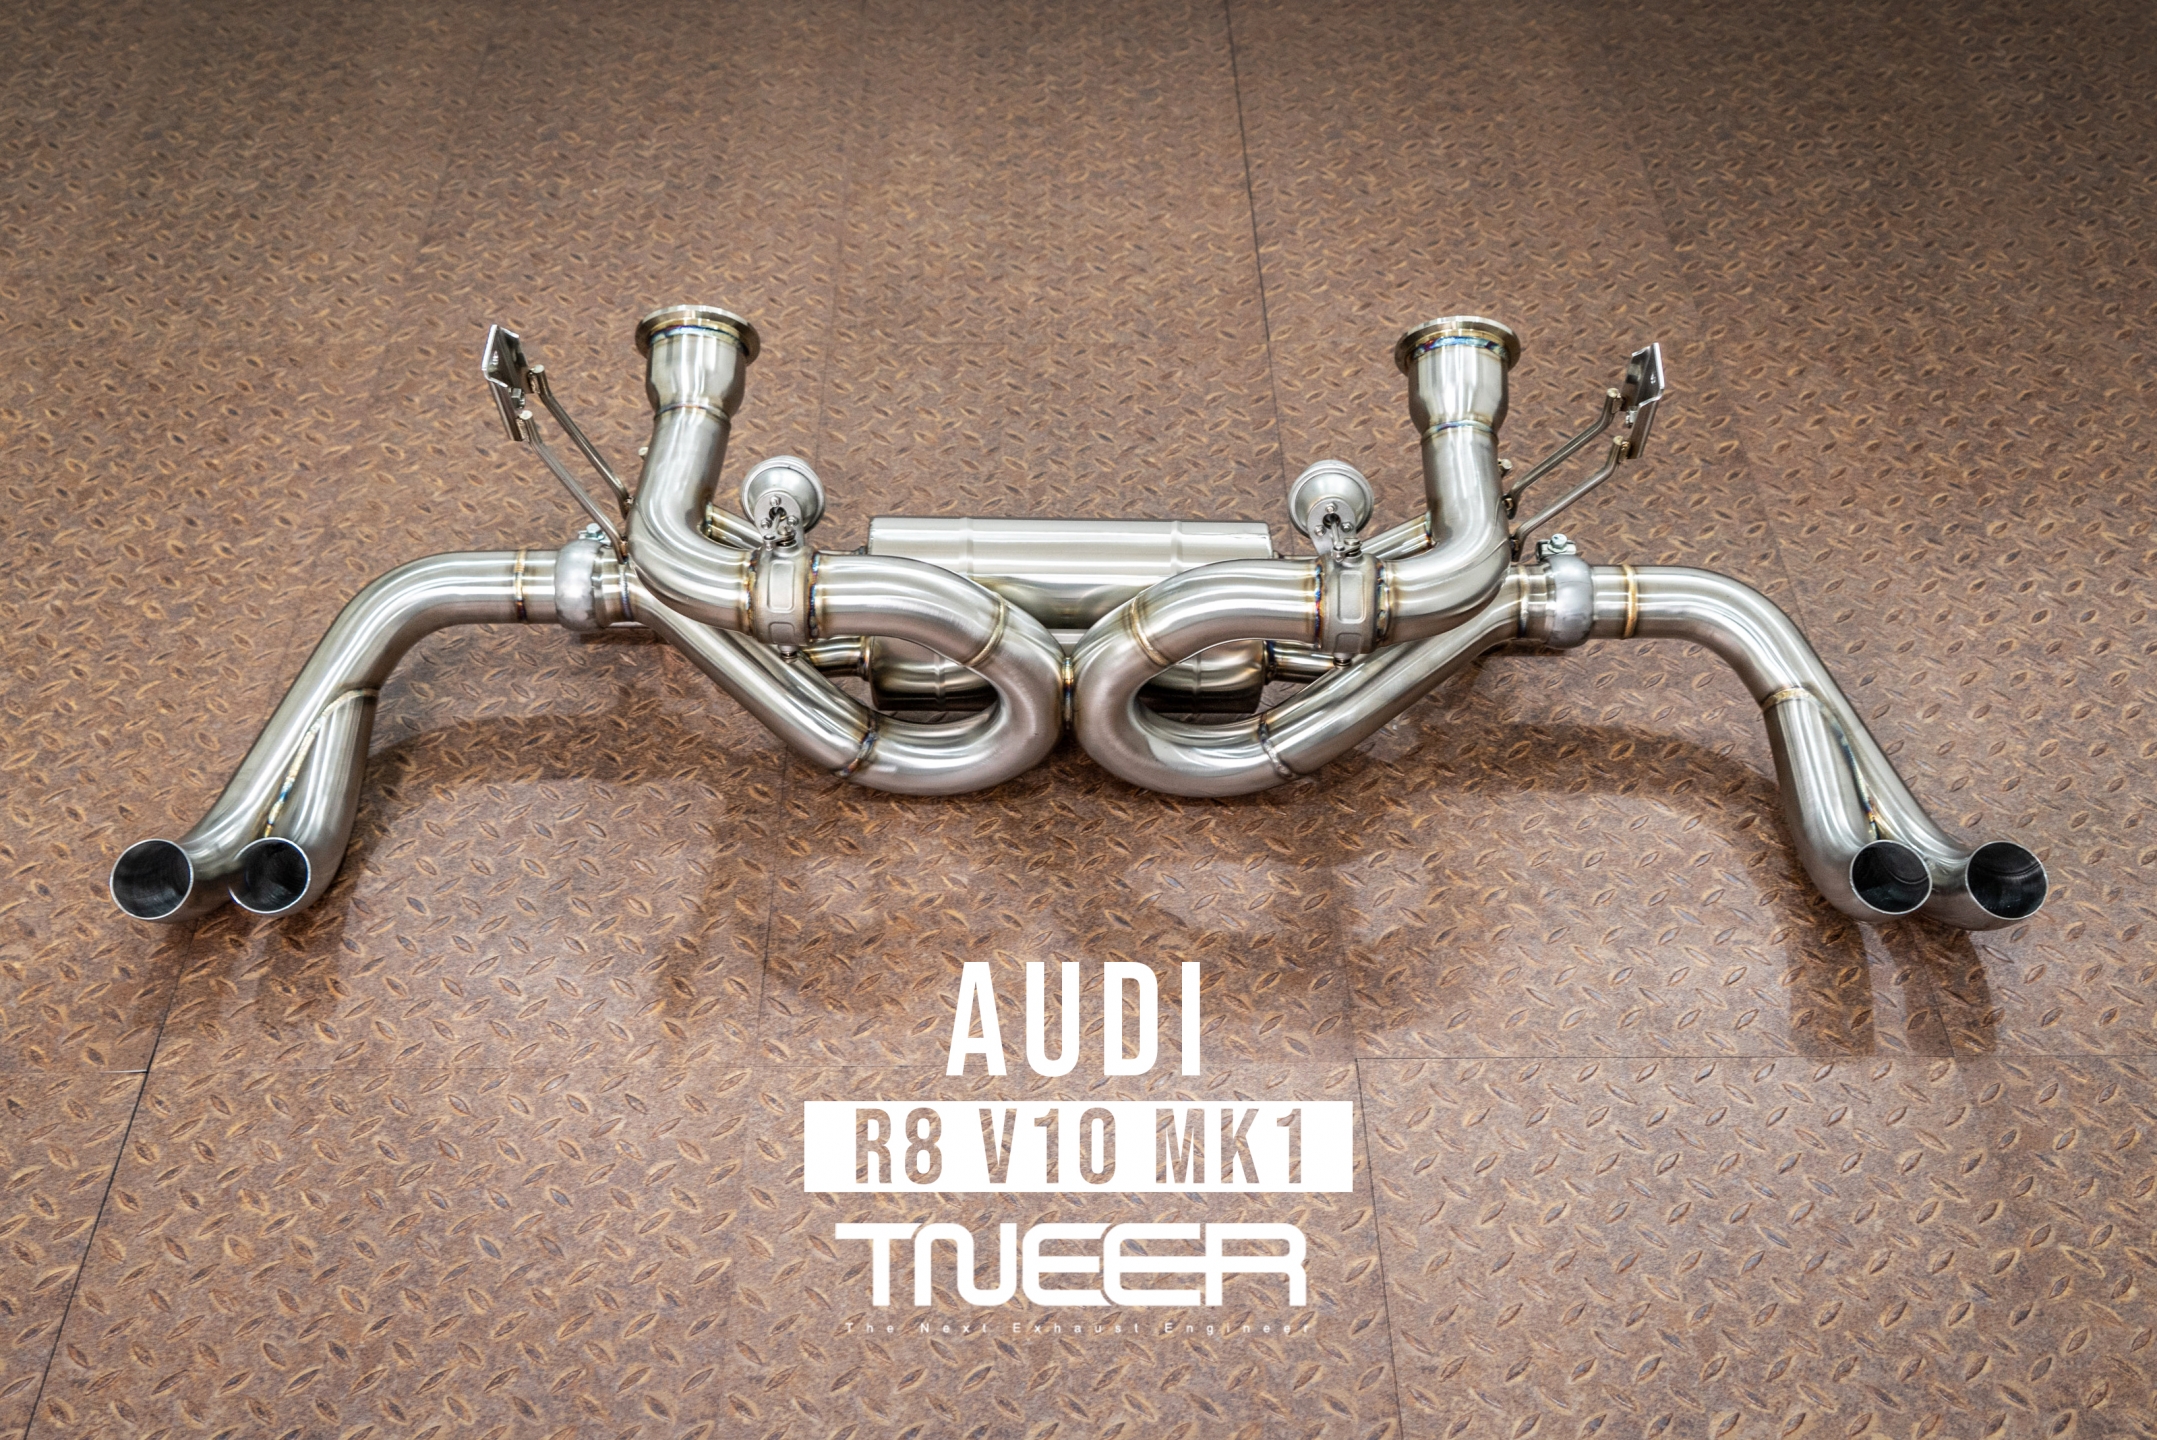 Audi R8 (MK1)V10 TNEER Valvetronic Rear Mufflers Exhaust System